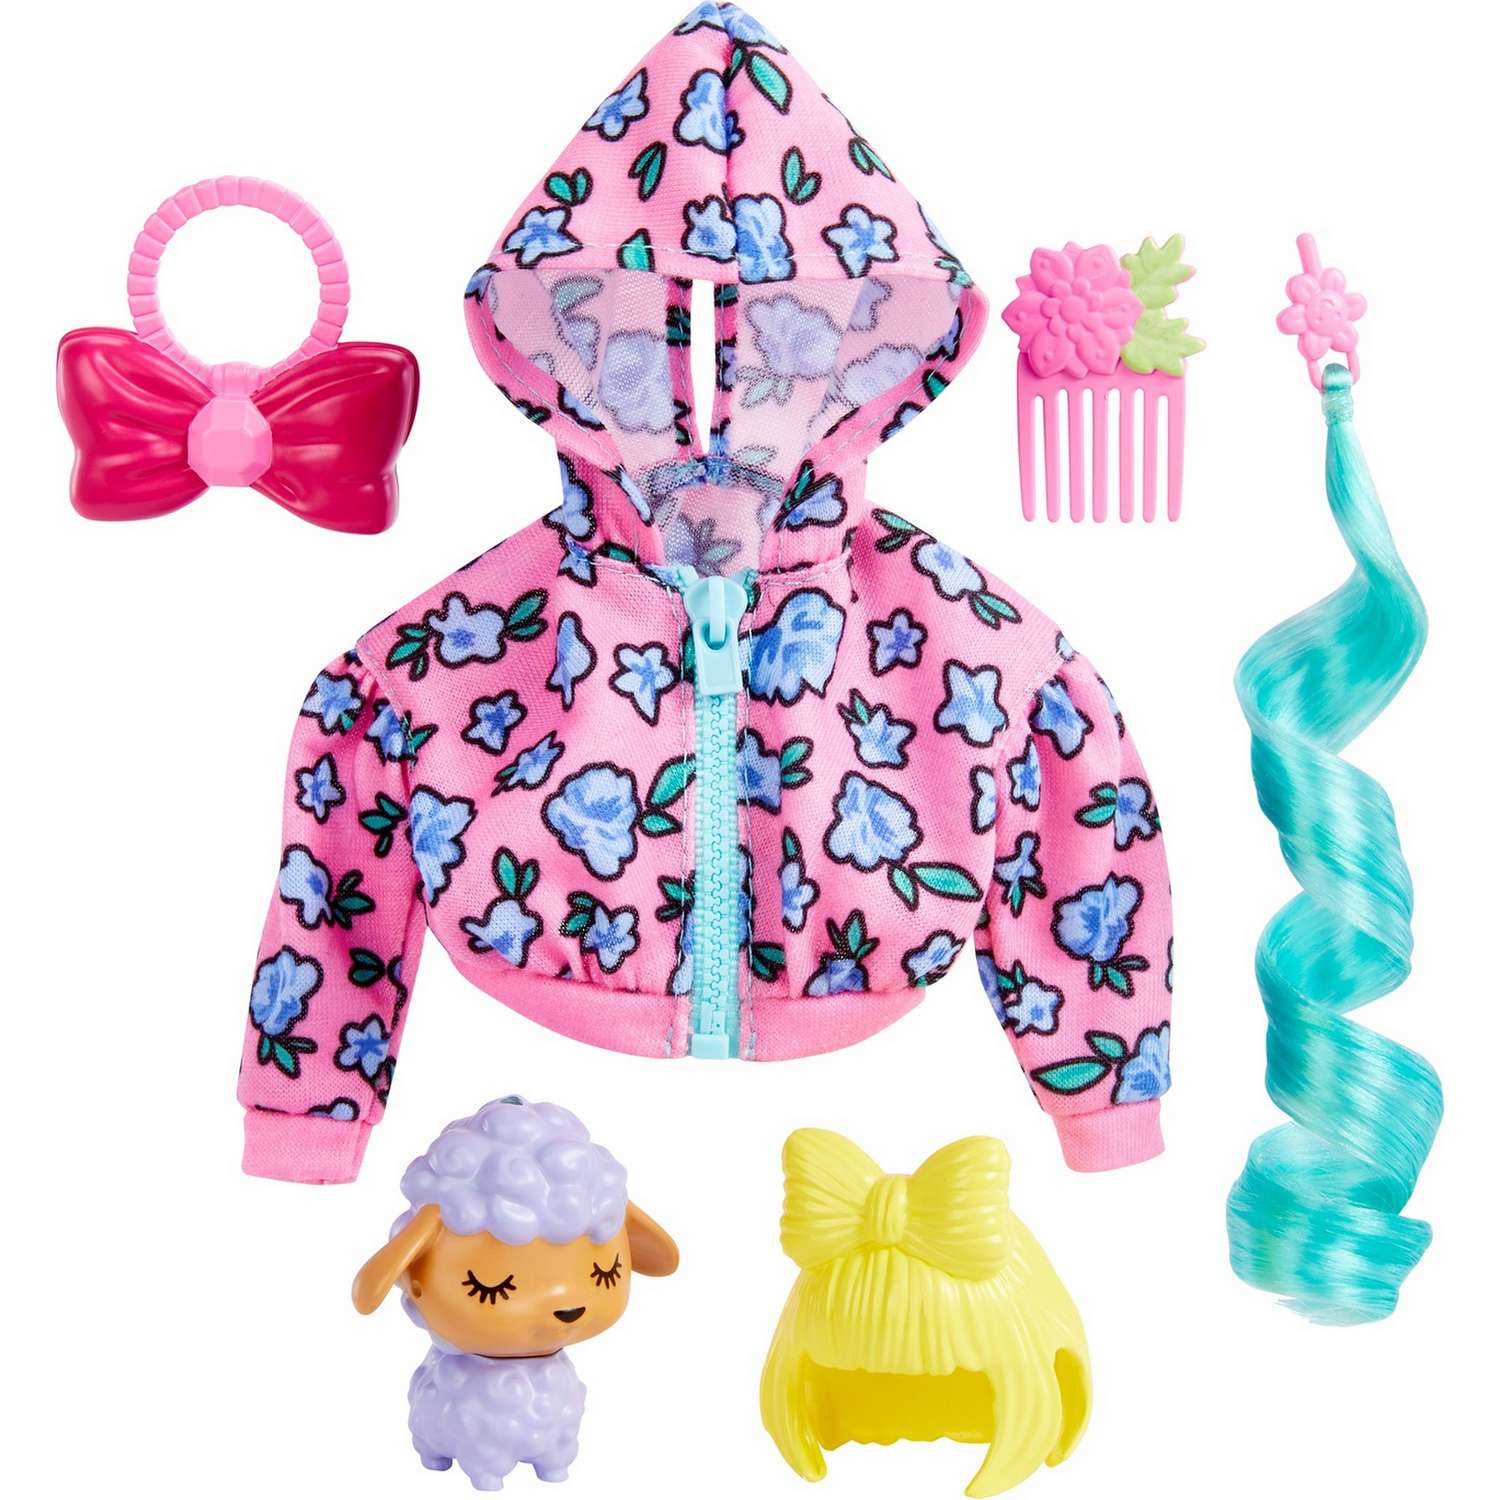 Набор игровой Barbie Экстра питомцы одежда для куклы и аксессуары 1 HDJ39 HDJ38 - фото 1